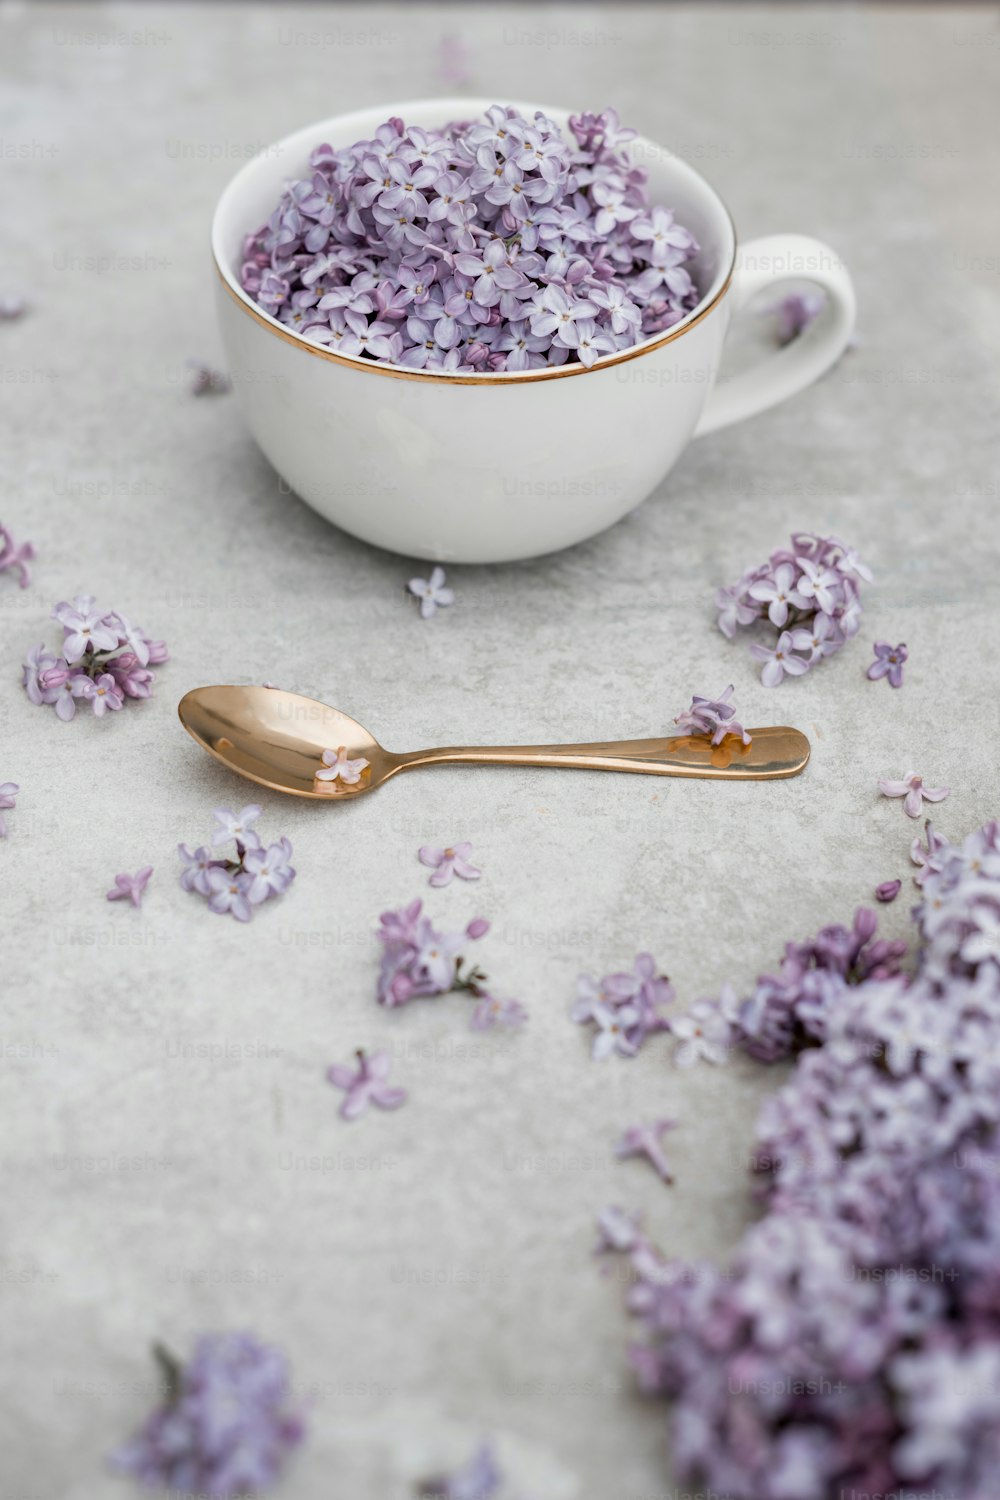 Un tazón blanco lleno de flores púrpuras junto a una cuchara